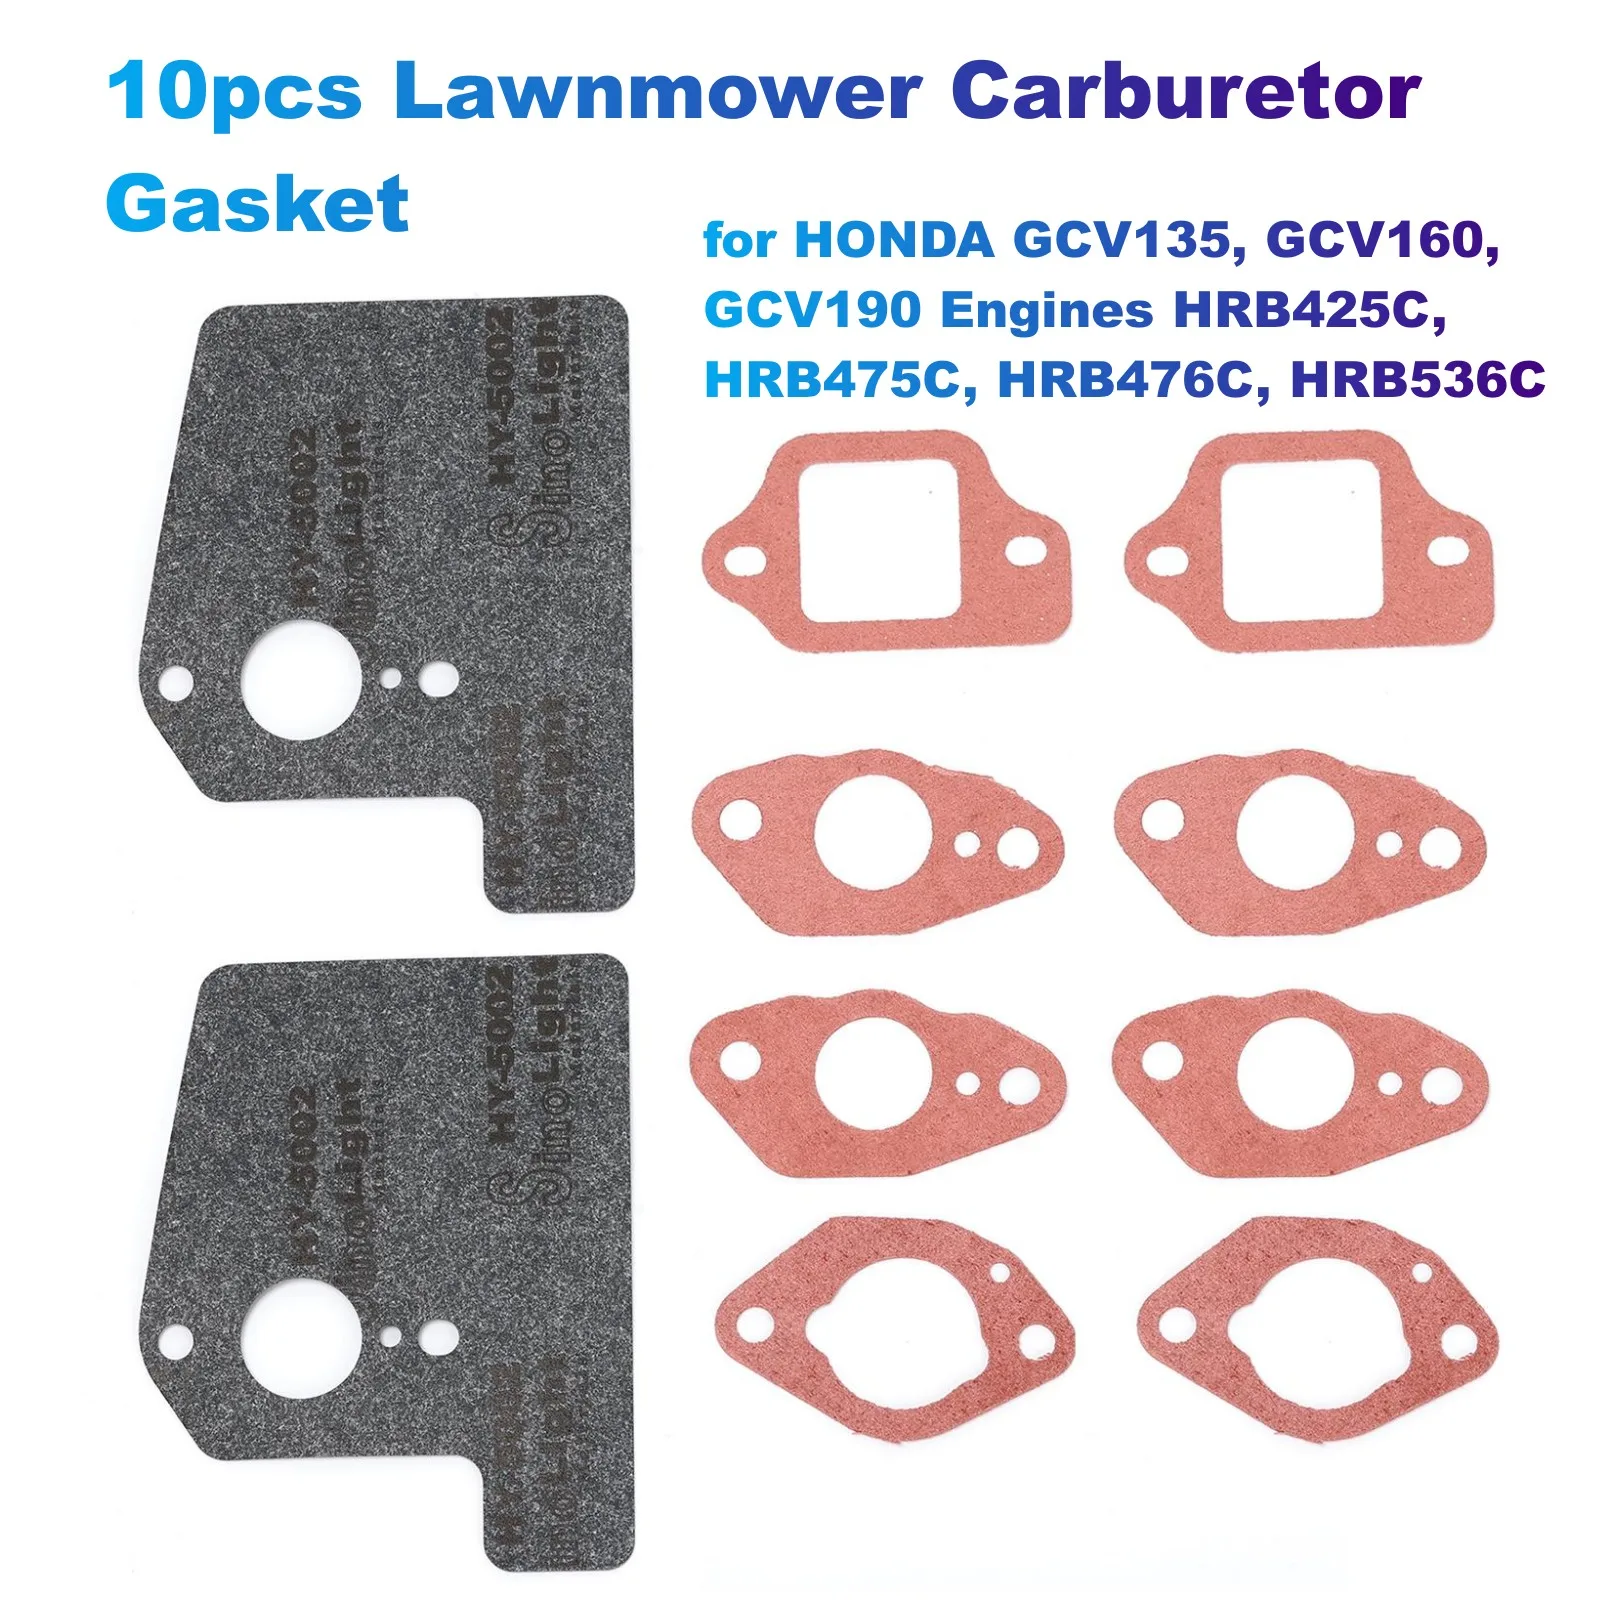 10pcs Lawnmower Carburetor Gasket for HONDA GCV135, GCV160, GCV190 Engines HRB425C, HRB475C, HRB476C, HRB536C (16221883800)